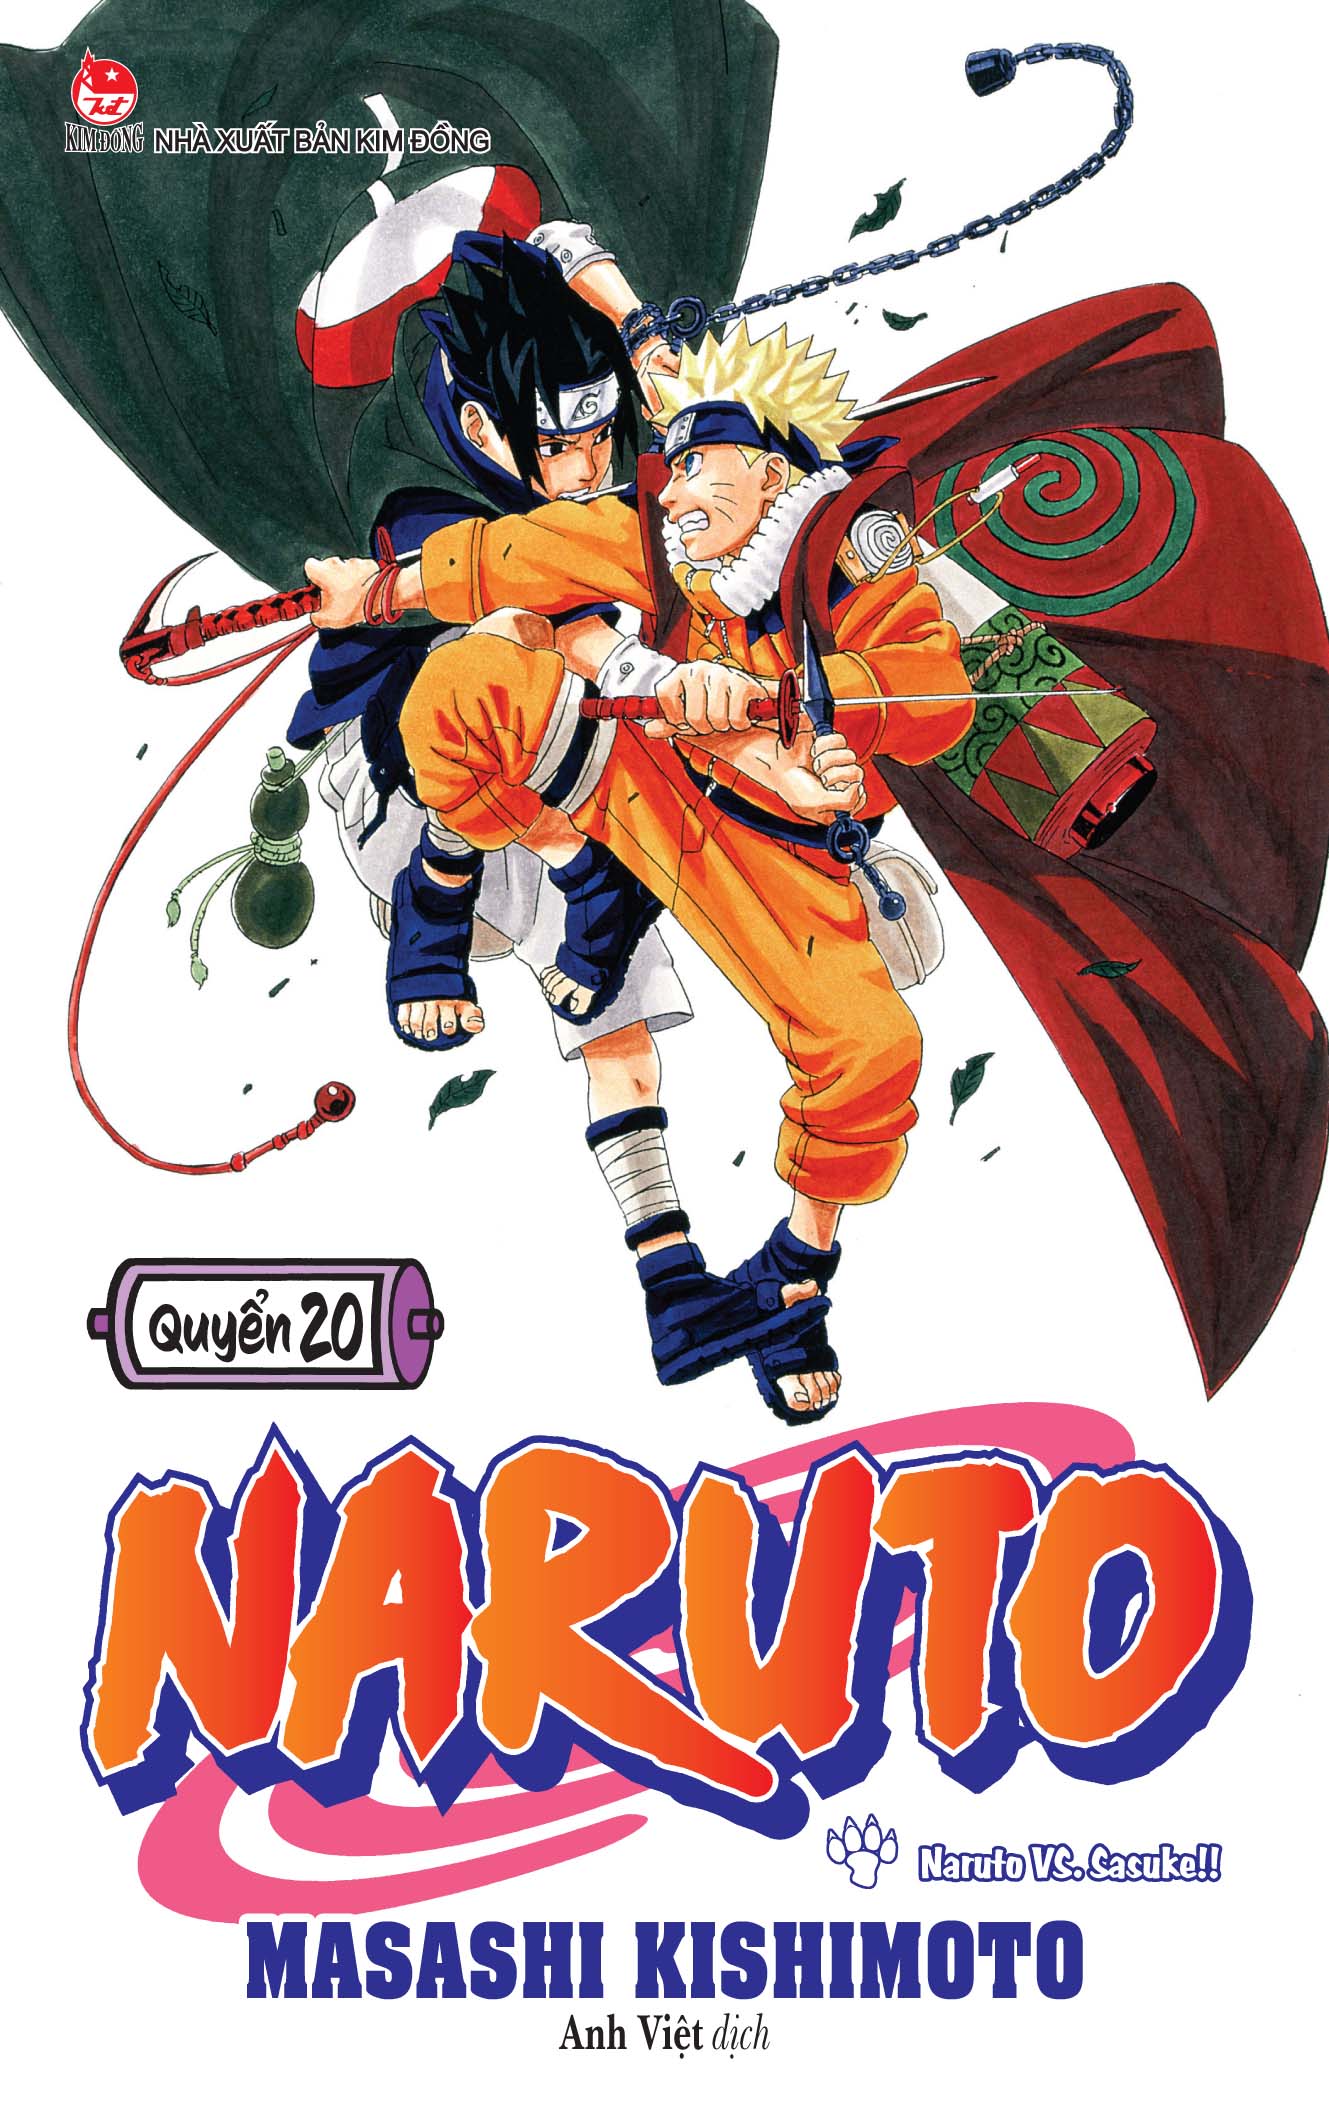 Naruto VS. Sasuke!! - Naruto: Đây là trận đấu không thể bỏ lỡ trong Naruto. Bạn sẽ thích thú với những hình ảnh chi tiết cả hai đối thủ ác liệt khi chạm trán nhau.